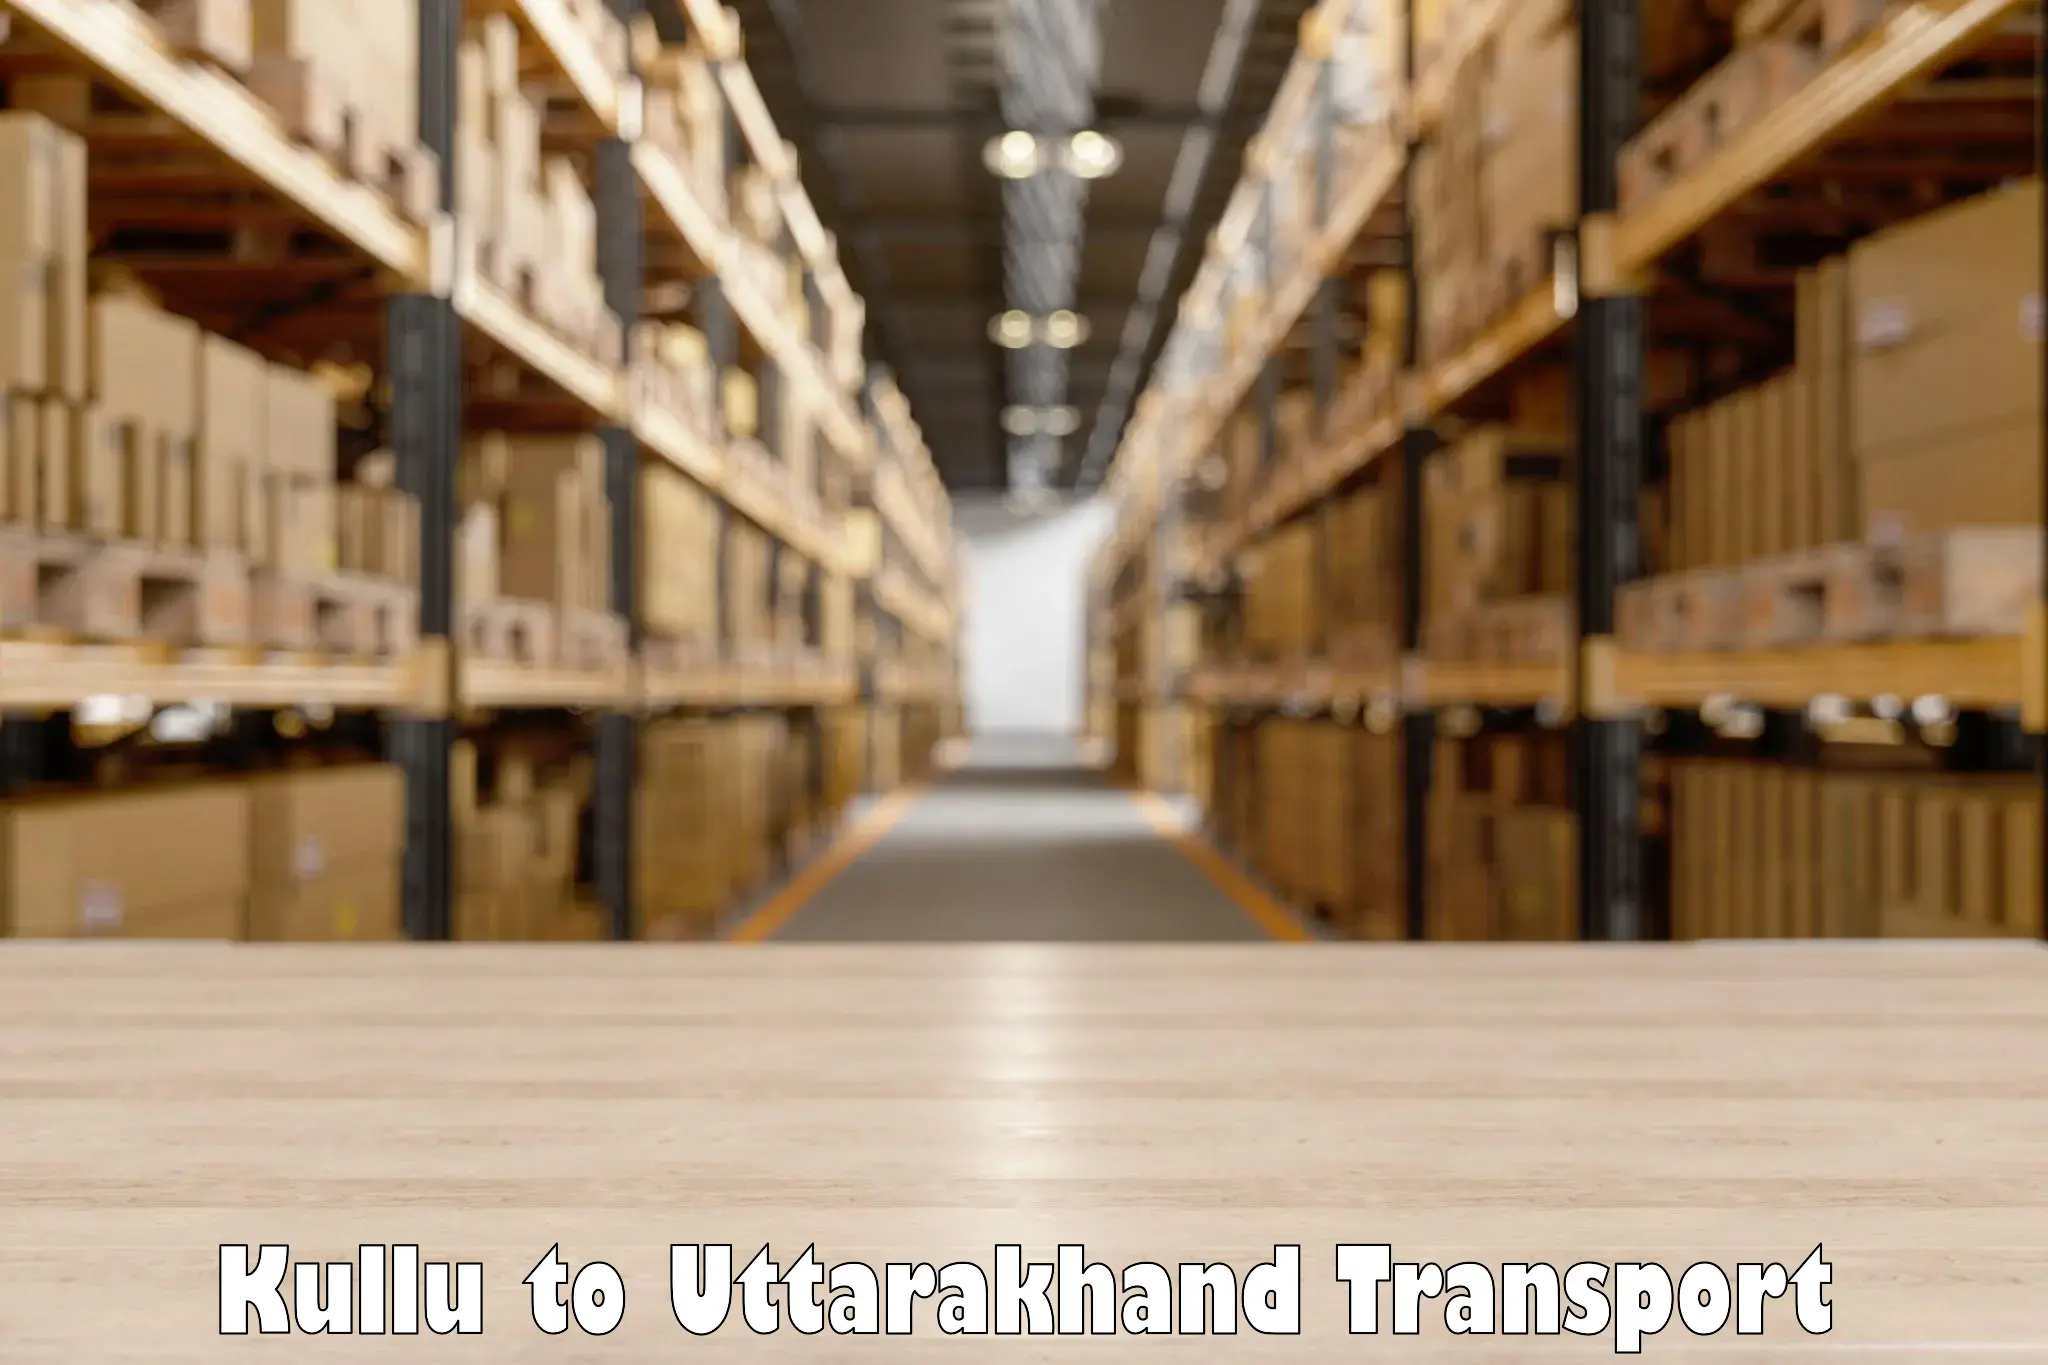 Lorry transport service Kullu to Pithoragarh